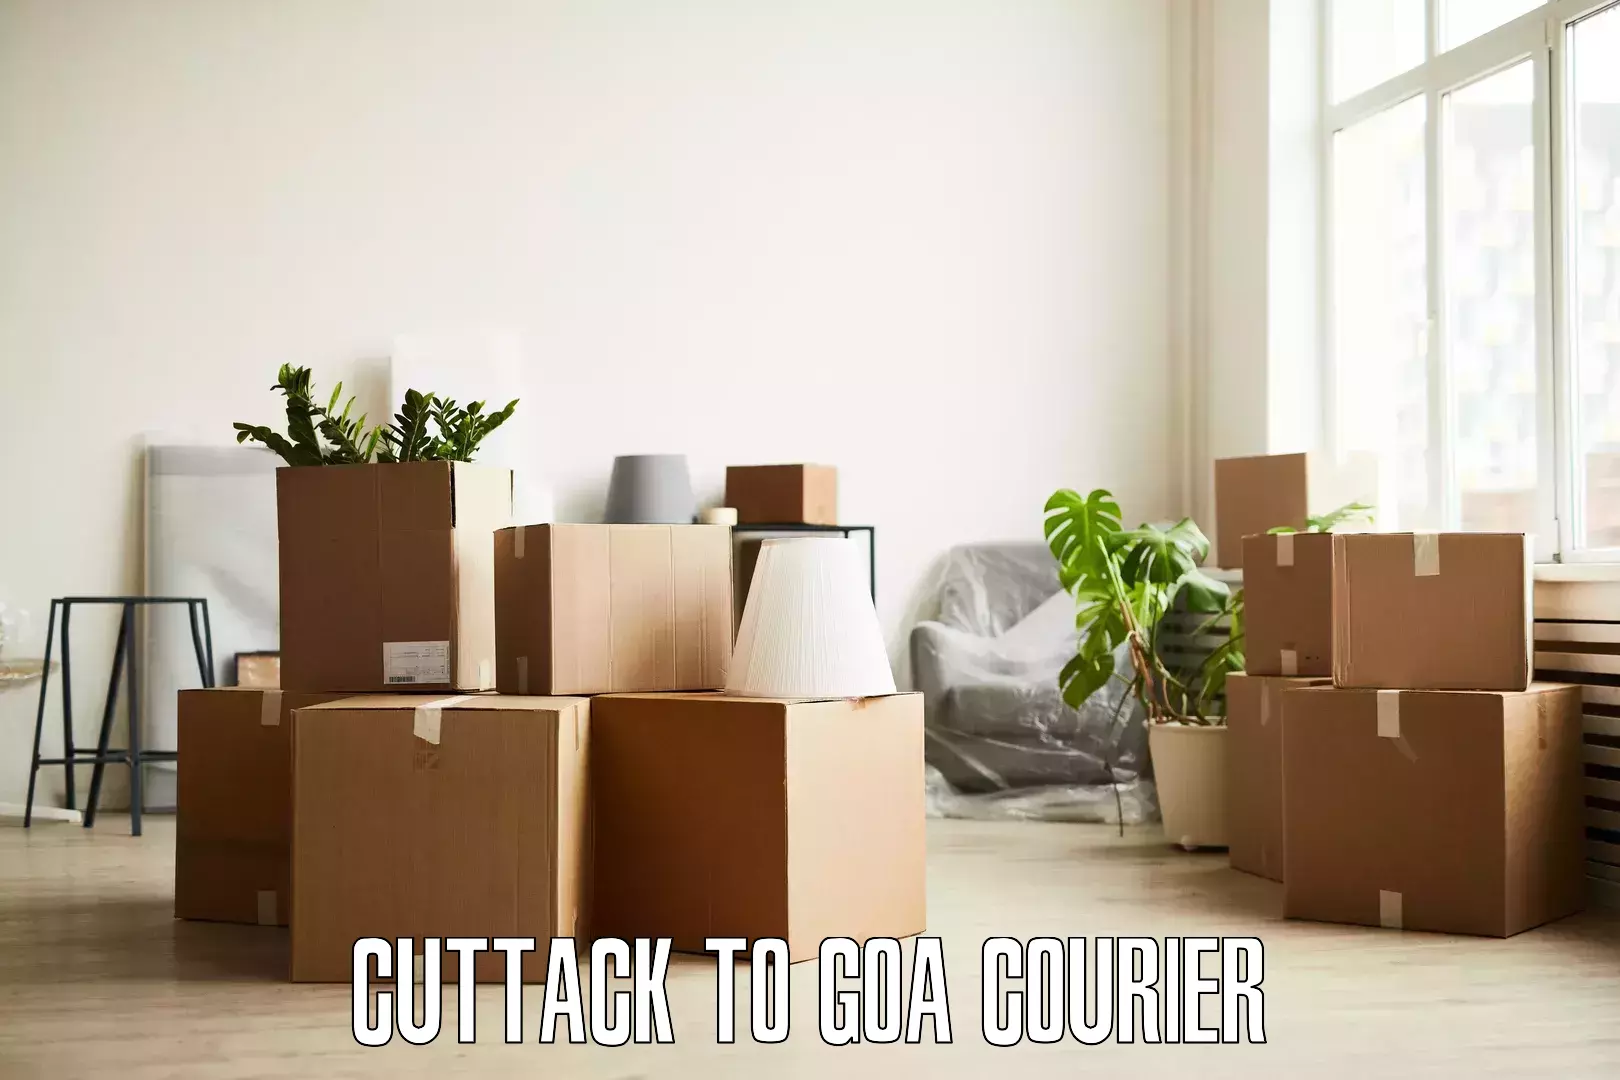 Stress-free furniture moving Cuttack to Goa